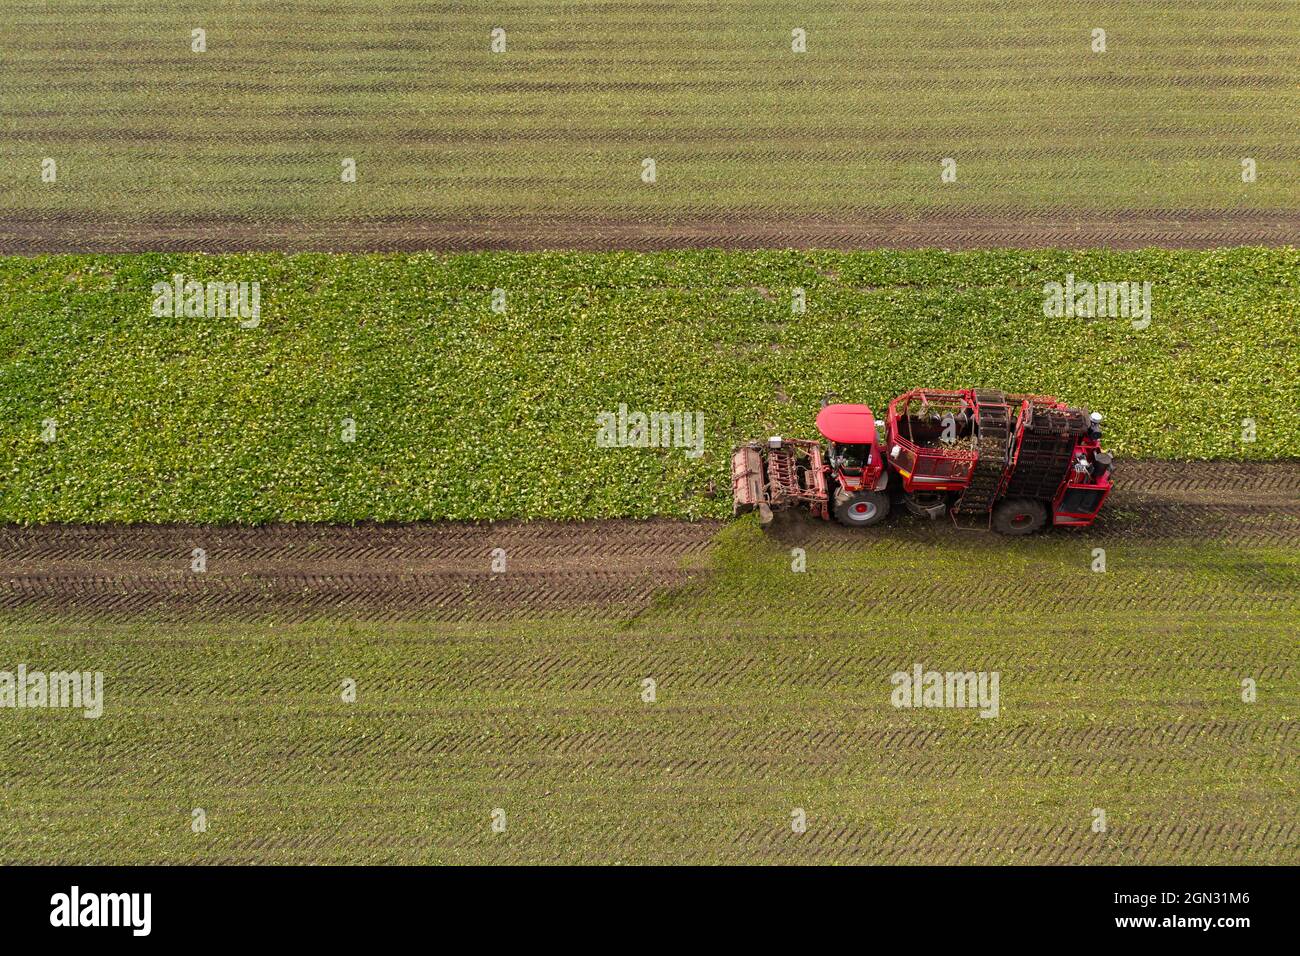 La mietitrebbiatrice mietiatrice raccoglie barbabietole da zucchero sul campo. Vista aerea Foto Stock